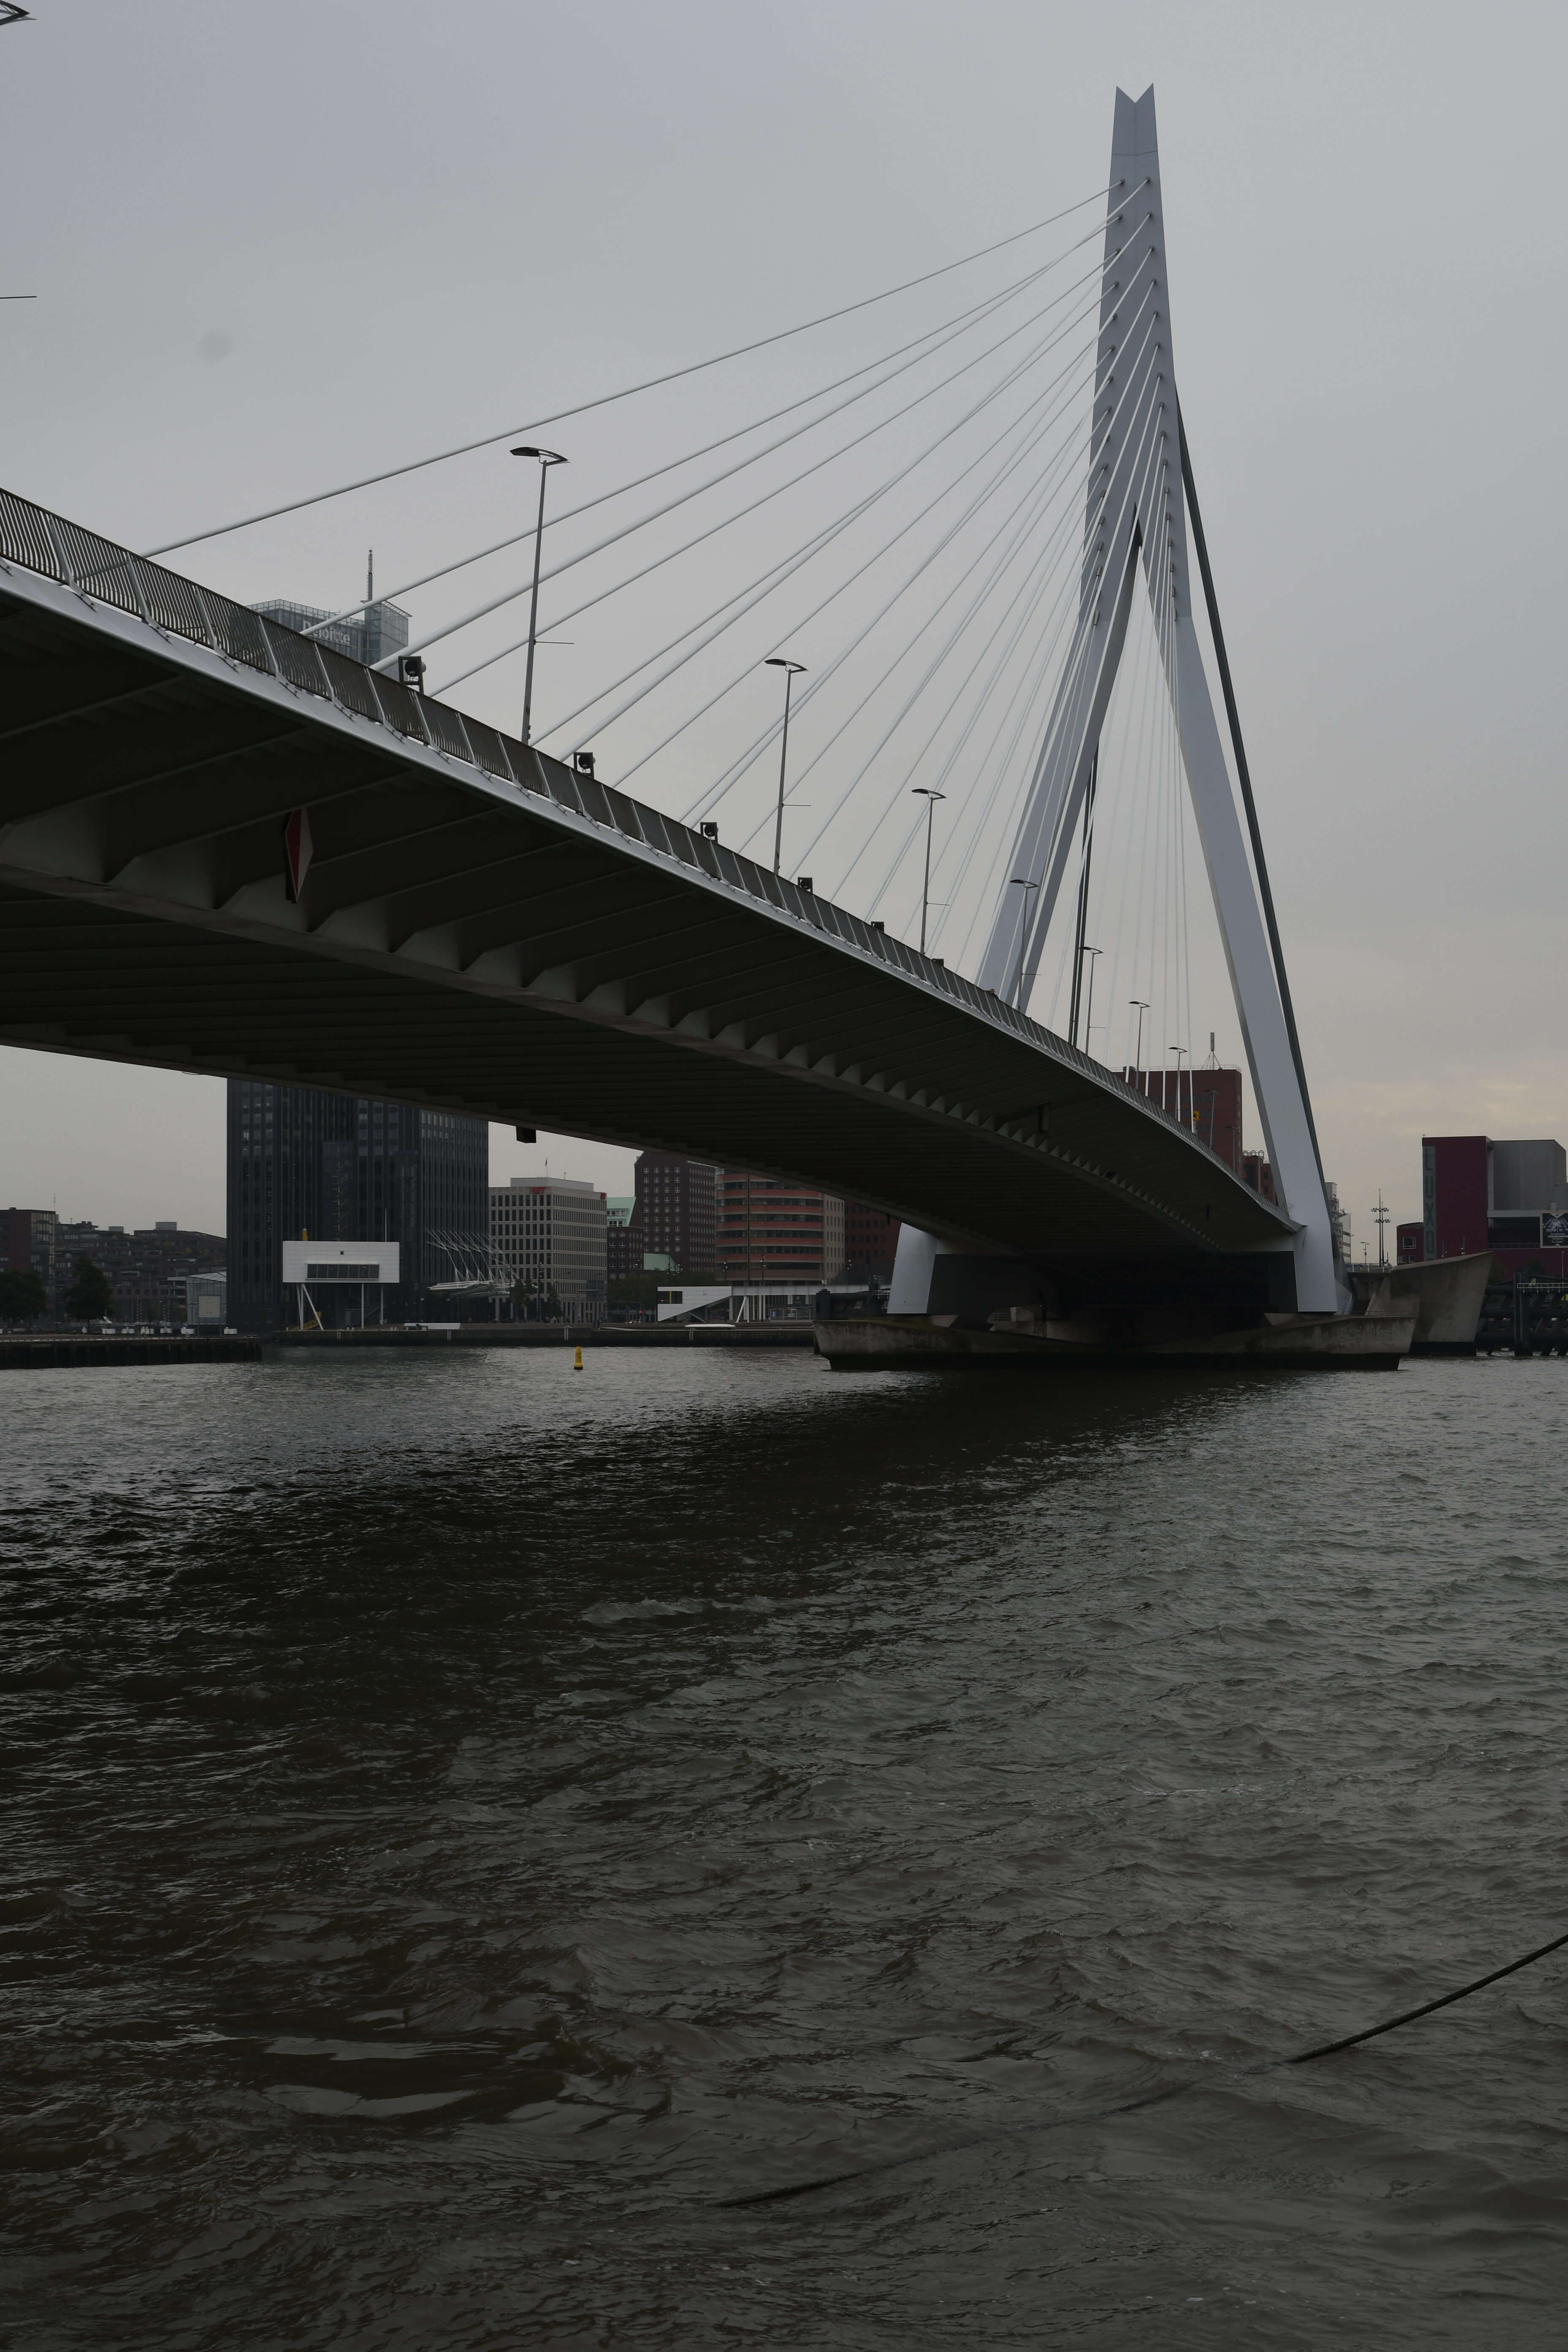 Vereinsreise Rotterdam, Erasmusbrücke